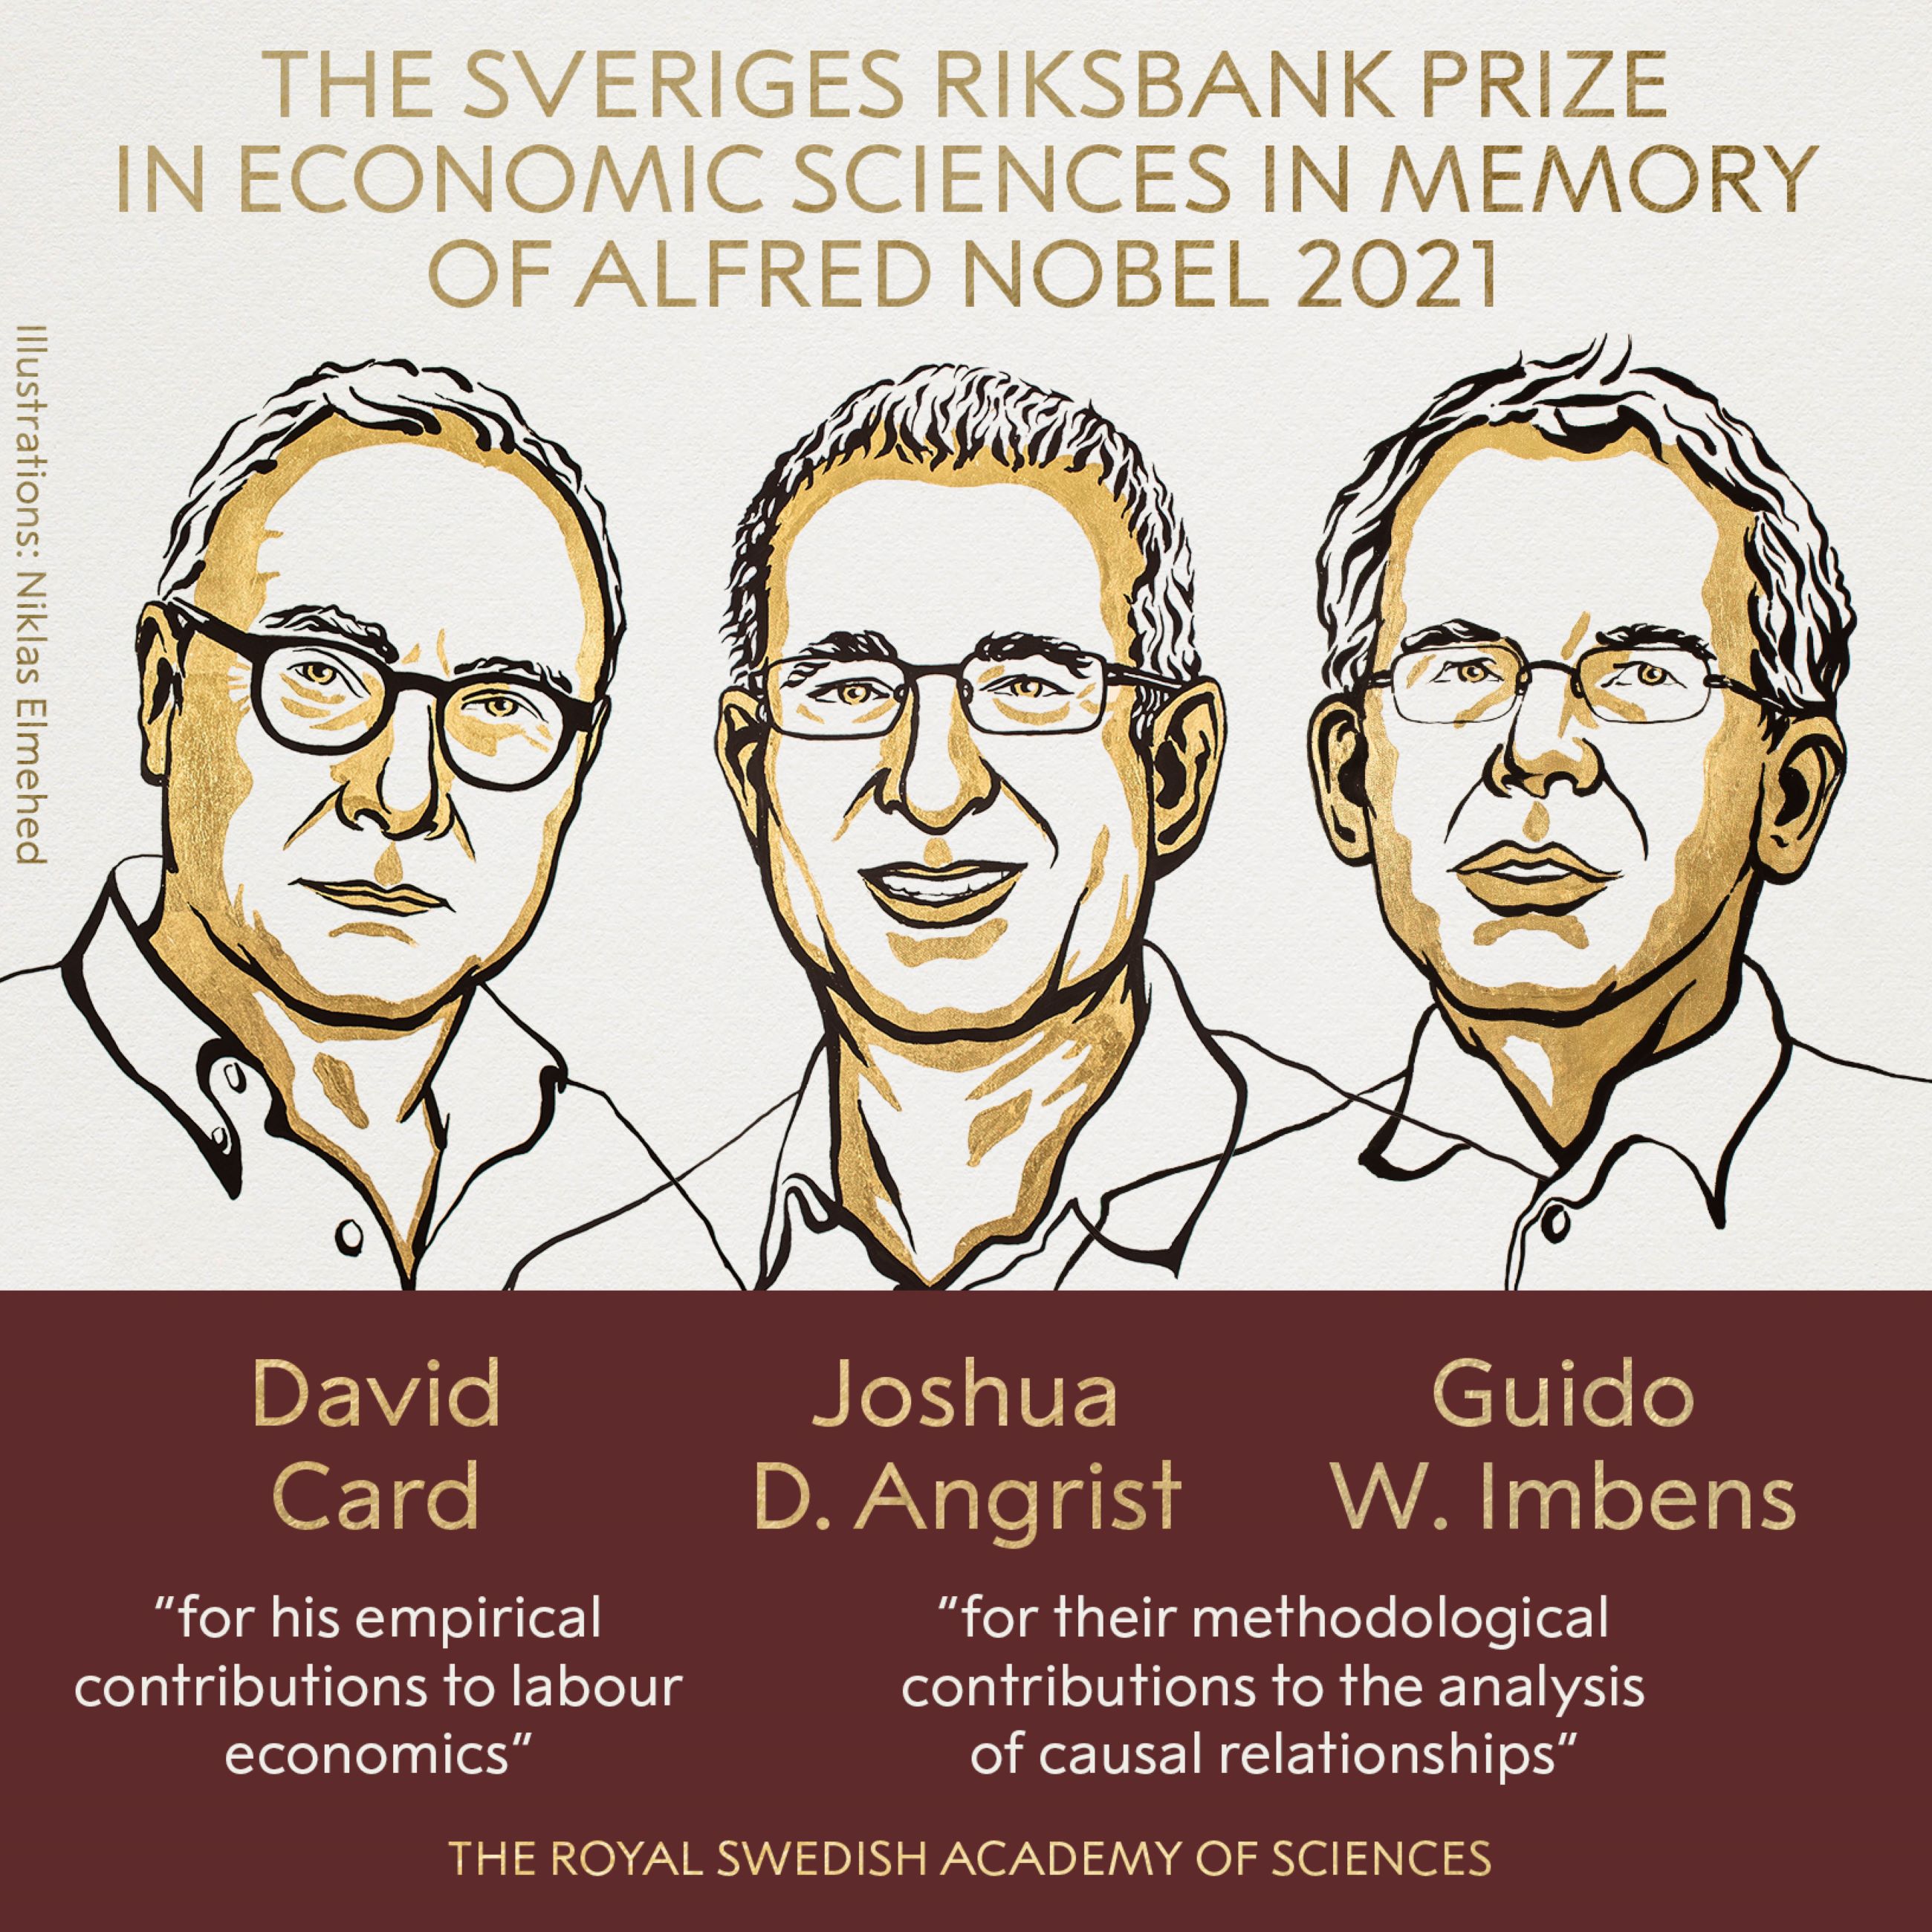 Los economistas Card, Angrist e Imbens reciben premio Nobel de Economía